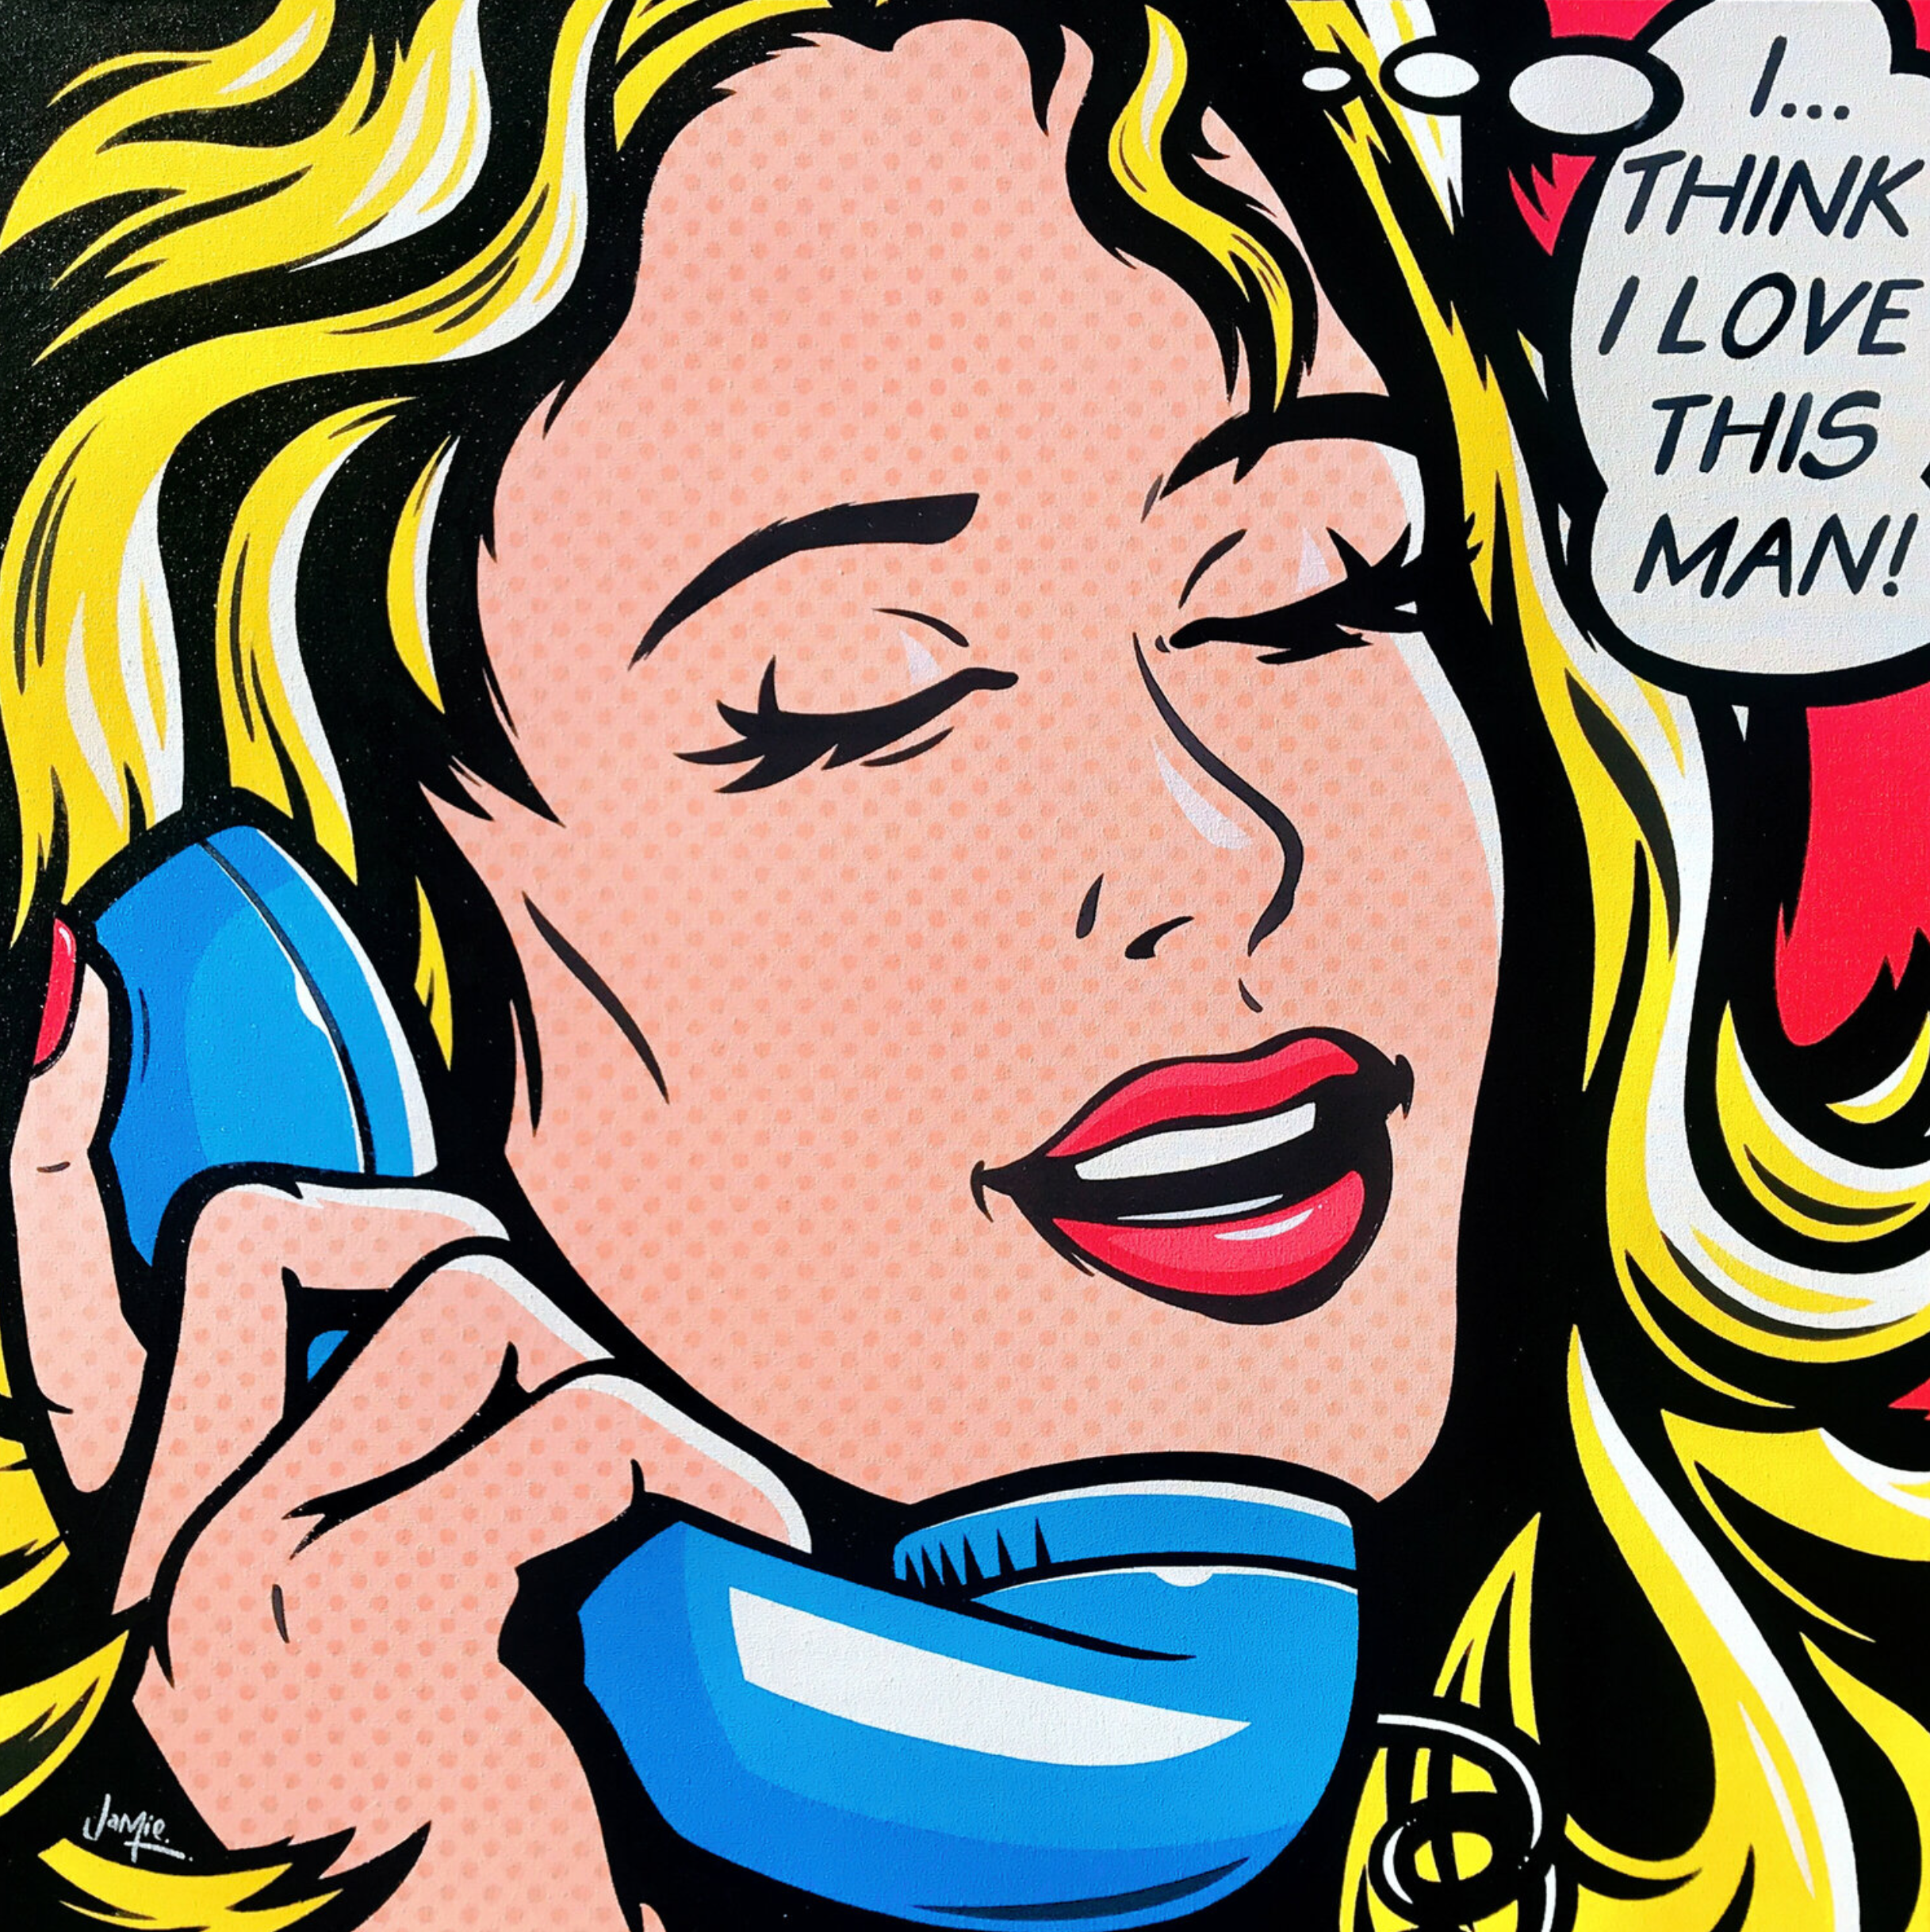 Peinture pop art de Jamie Lee "I Think I Love This Man" de style bande dessinée au design original, fille pop art au téléphone. Une jolie jeune femme qui parle à un vieux téléphone rétro se rend compte qu'elle est amoureuse de l'homme à qui elle parle.